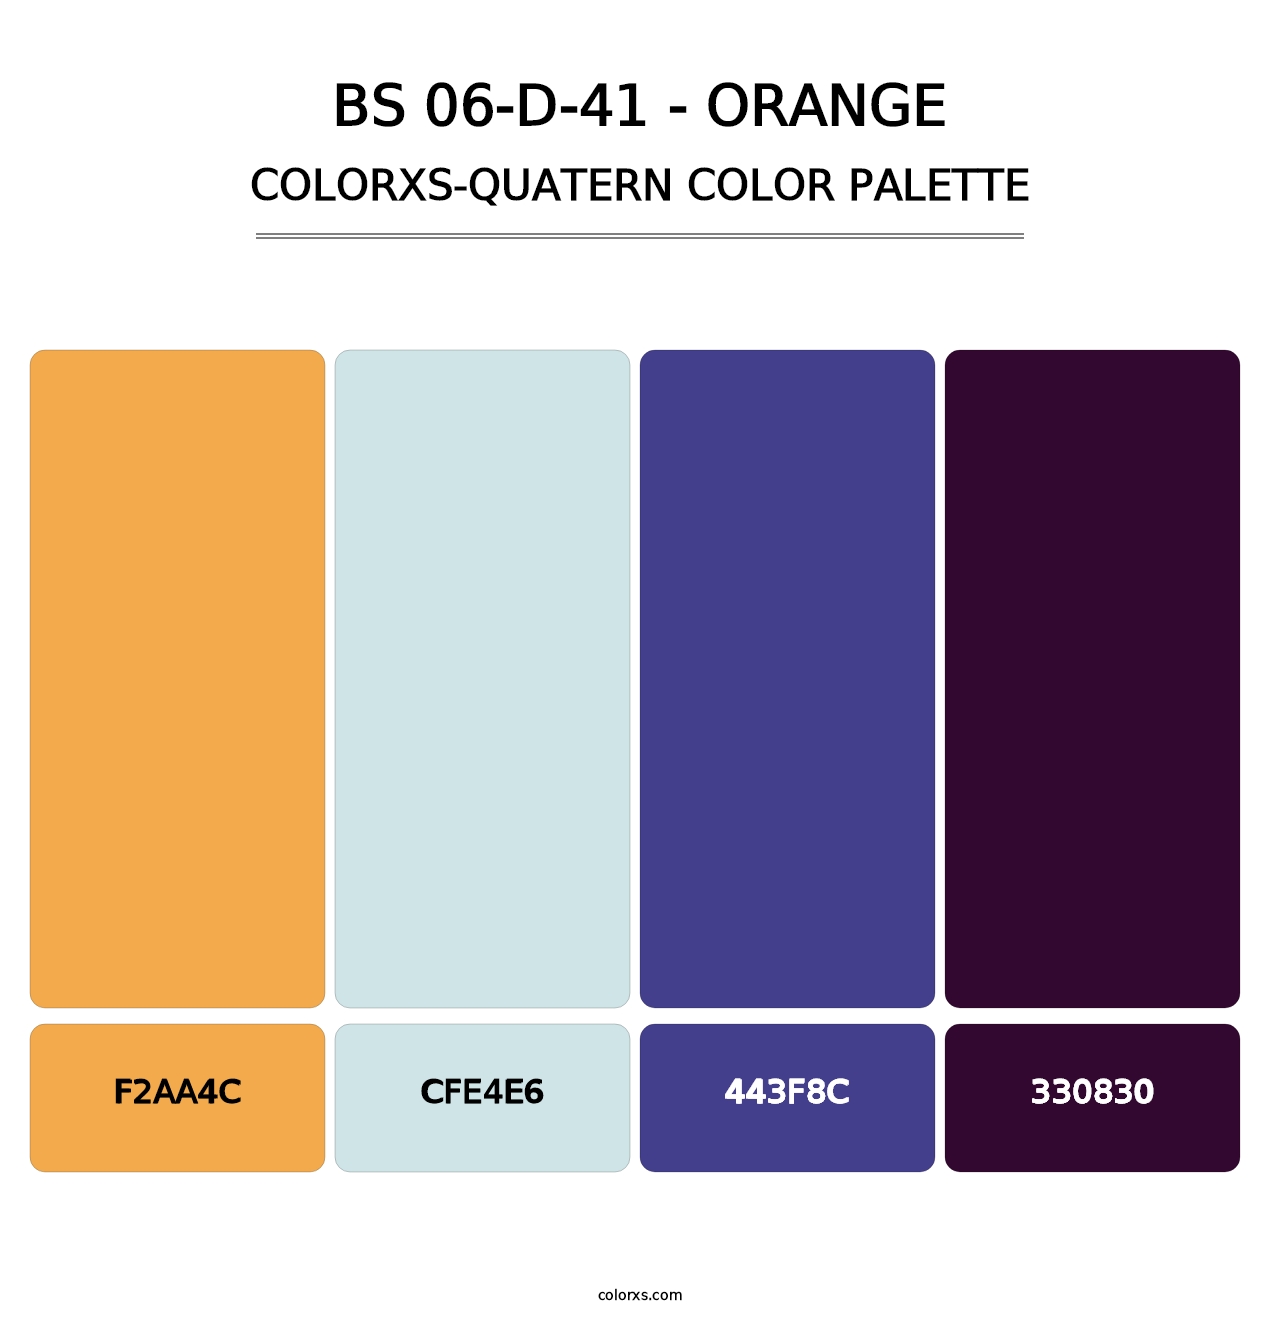 BS 06-D-41 - Orange - Colorxs Quatern Palette